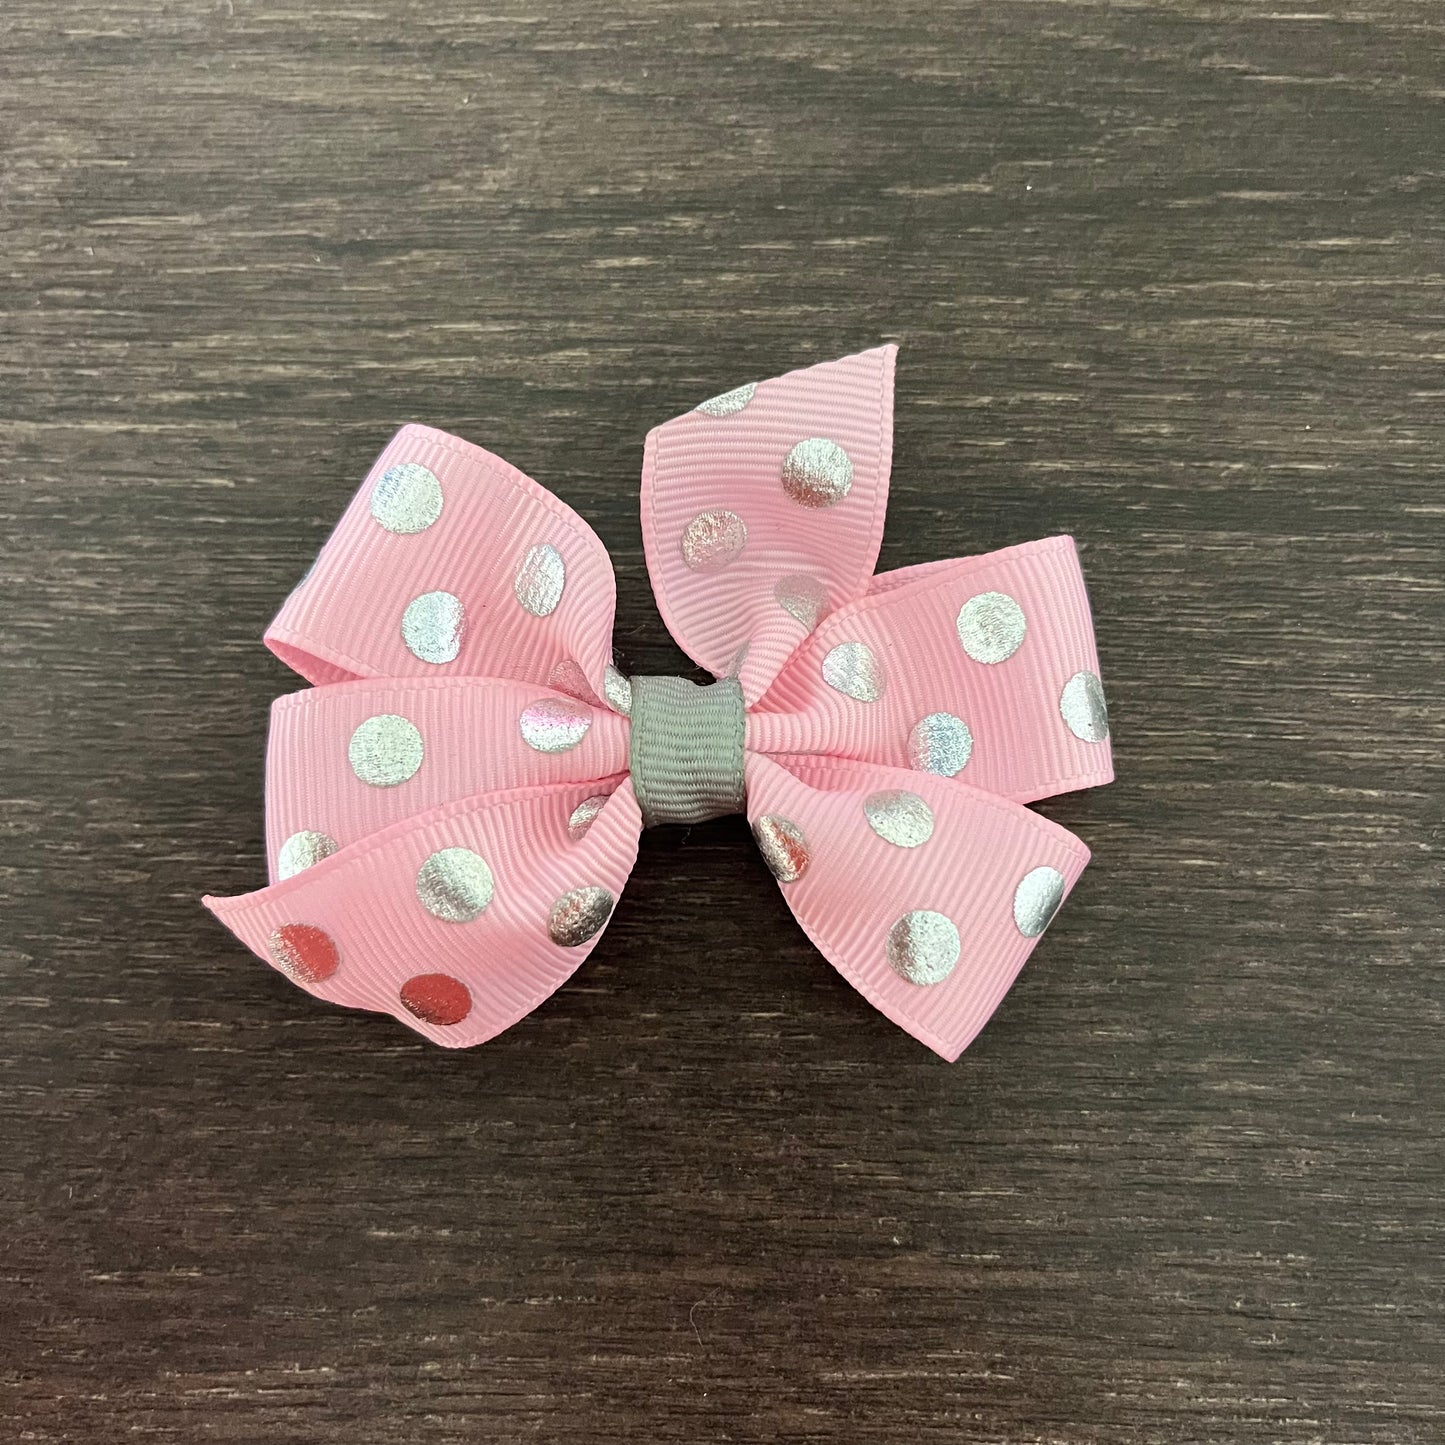 3" Pinwheel Bow - Pink / Silver Polka Dots